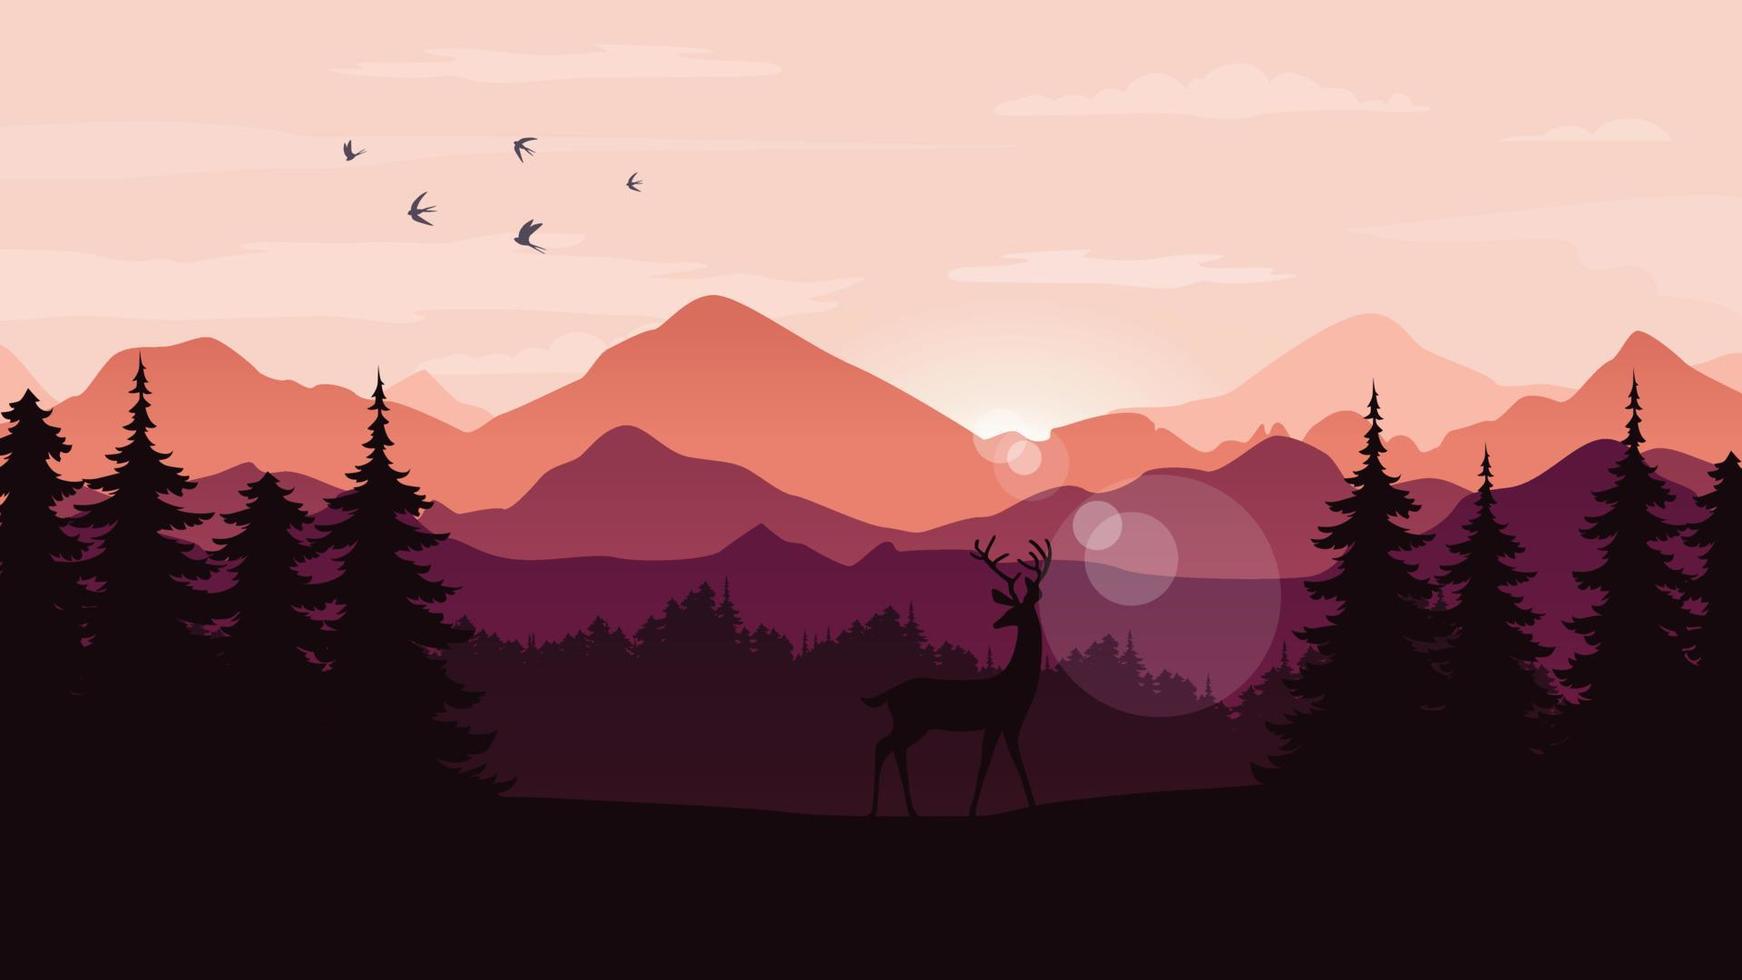 vektor landskap med silhuetter av berg, träd och en rådjur med soluppgång eller solnedgång himmel. tall skog. utomhus- och natur begrepp. vektor illustration.